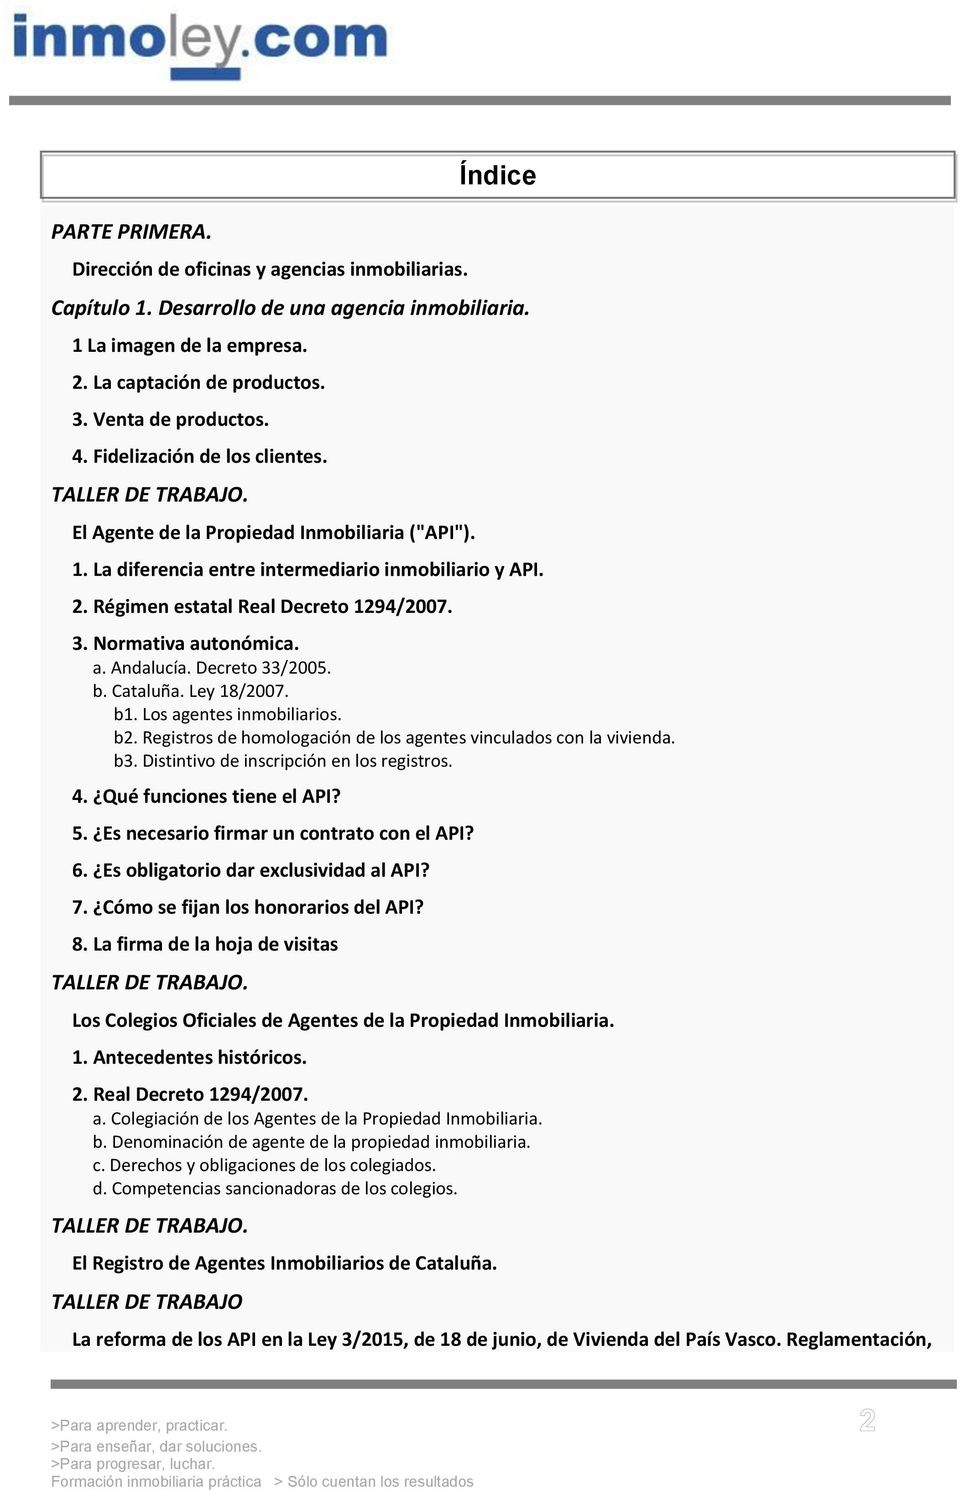 Normativa autonómica. a. Andalucía. Decreto 33/2005. b. Cataluña. Ley 18/2007. b1. Los agentes inmobiliarios. b2. Registros de homologación de los agentes vinculados con la vivienda. b3.